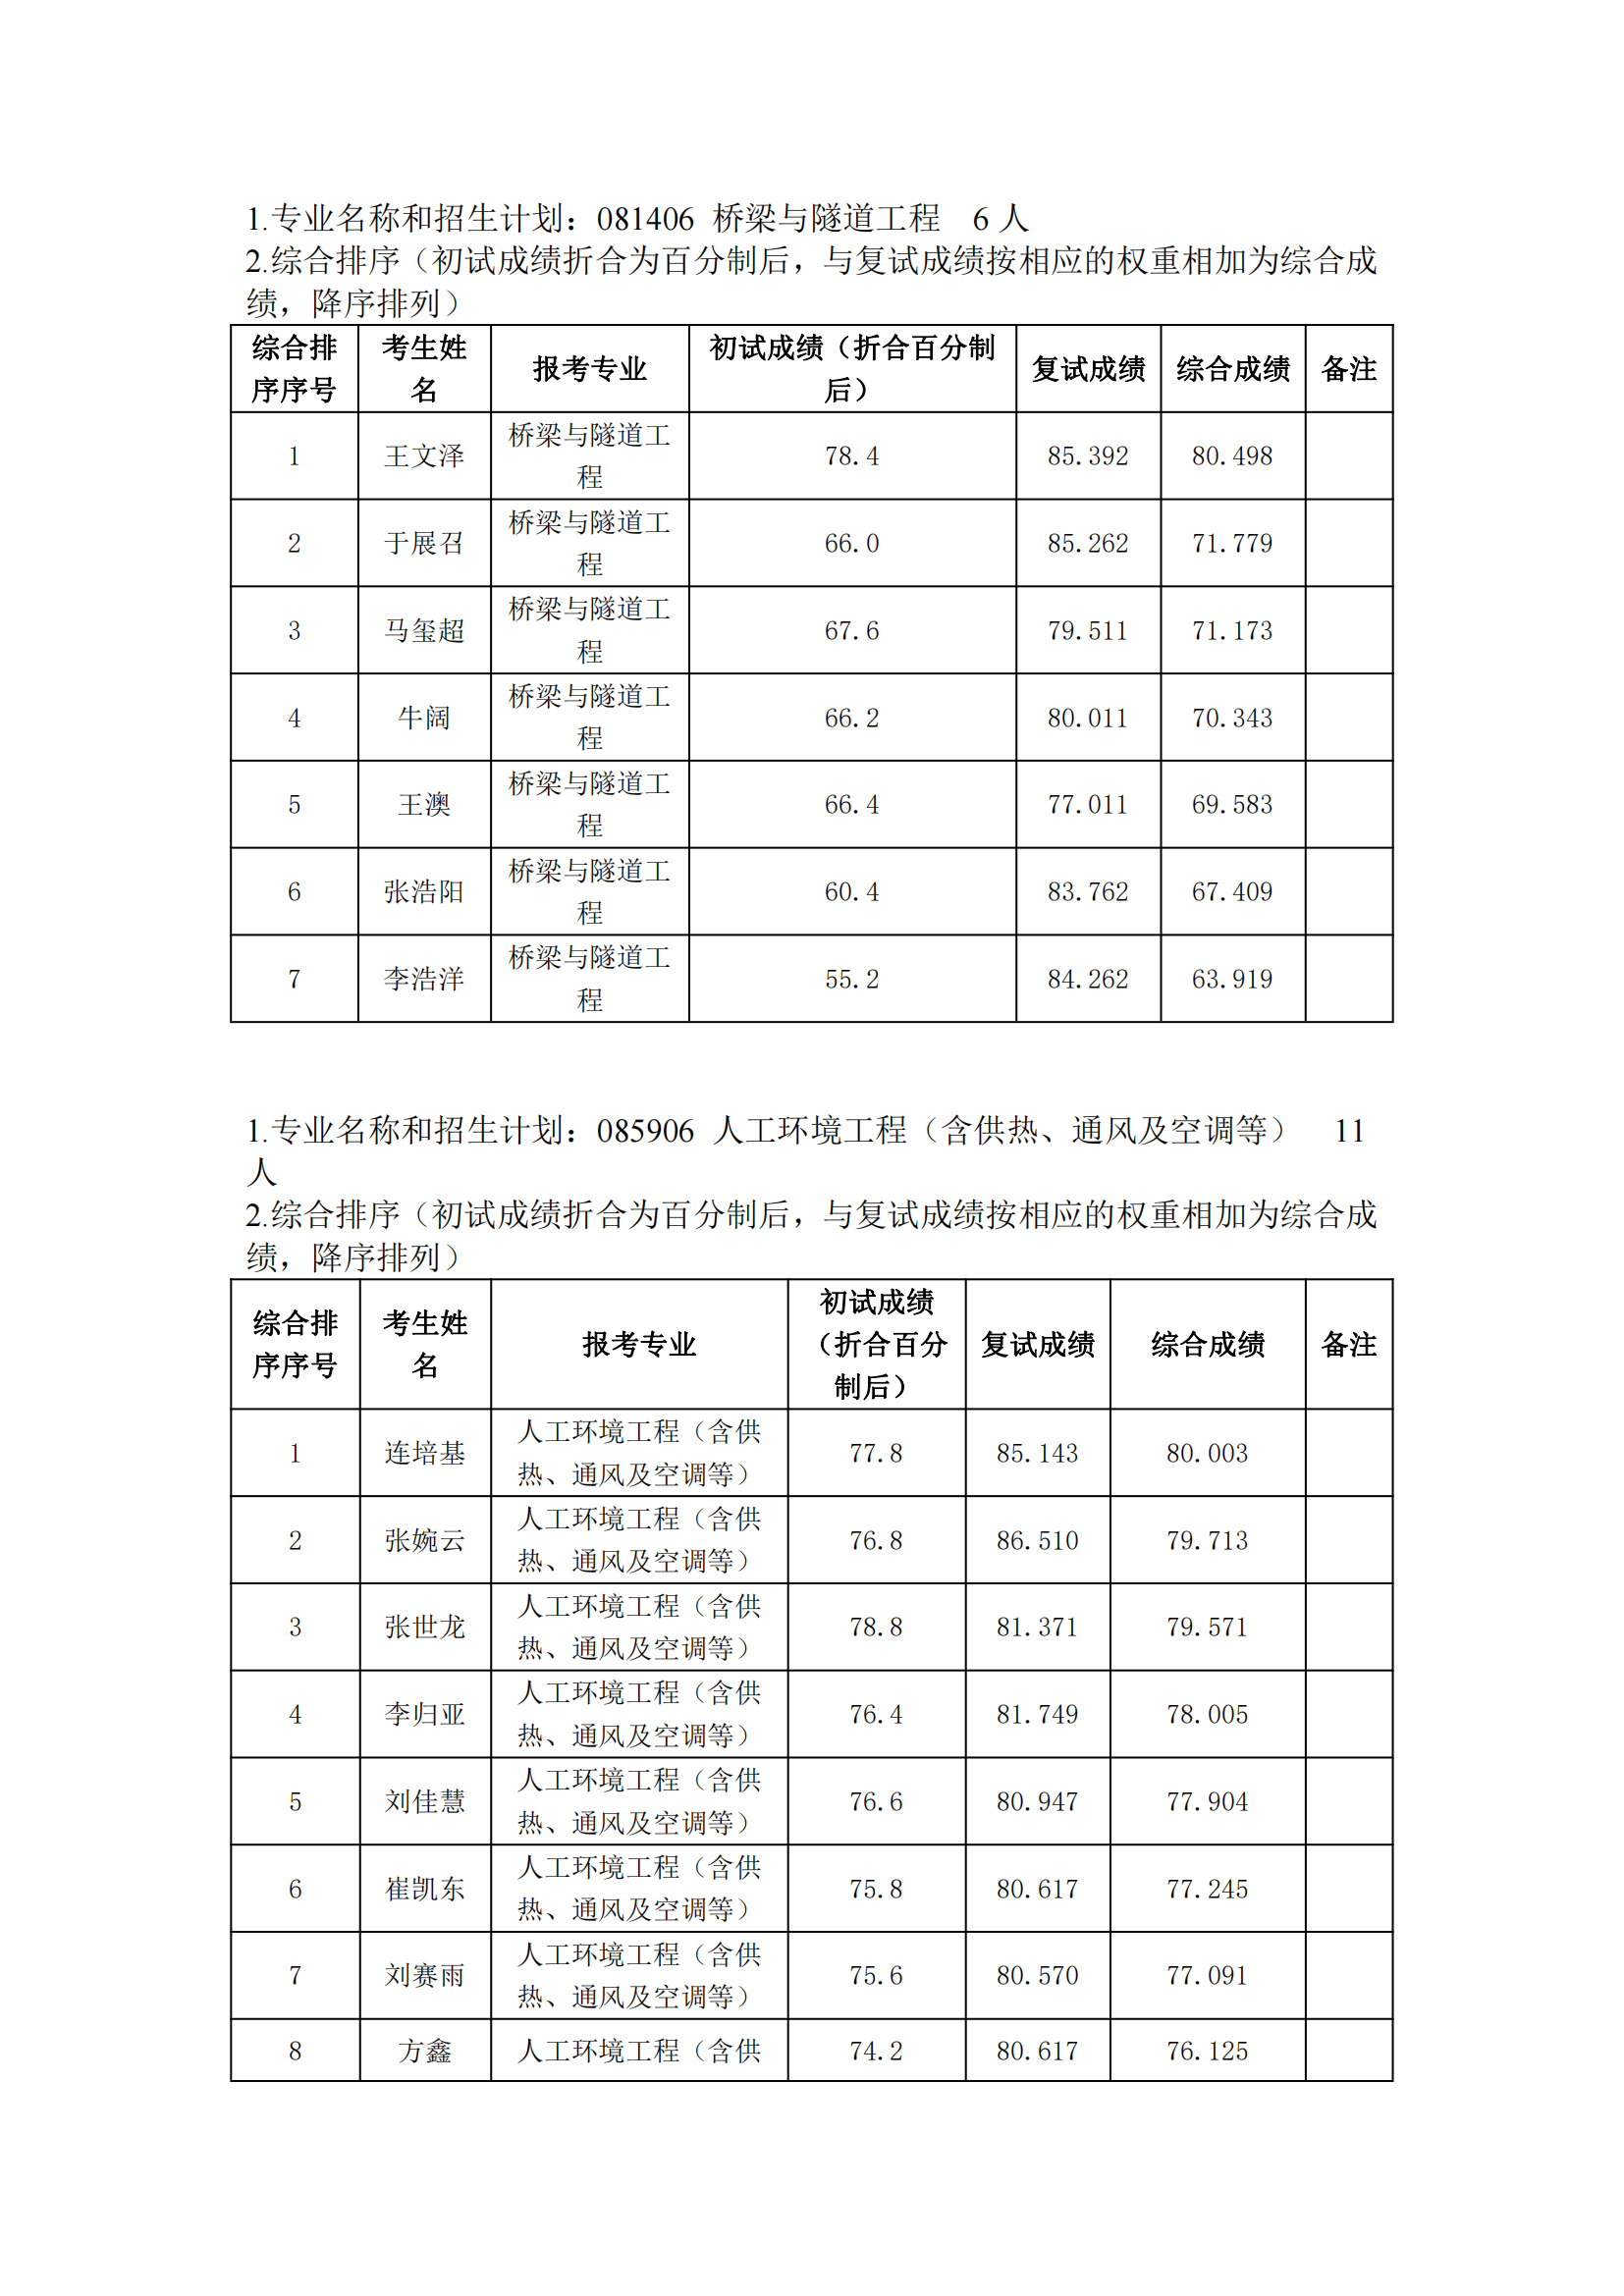 郑州大学2022年硕士研究生复试结果综合排序公示表_20231008164632_04.png